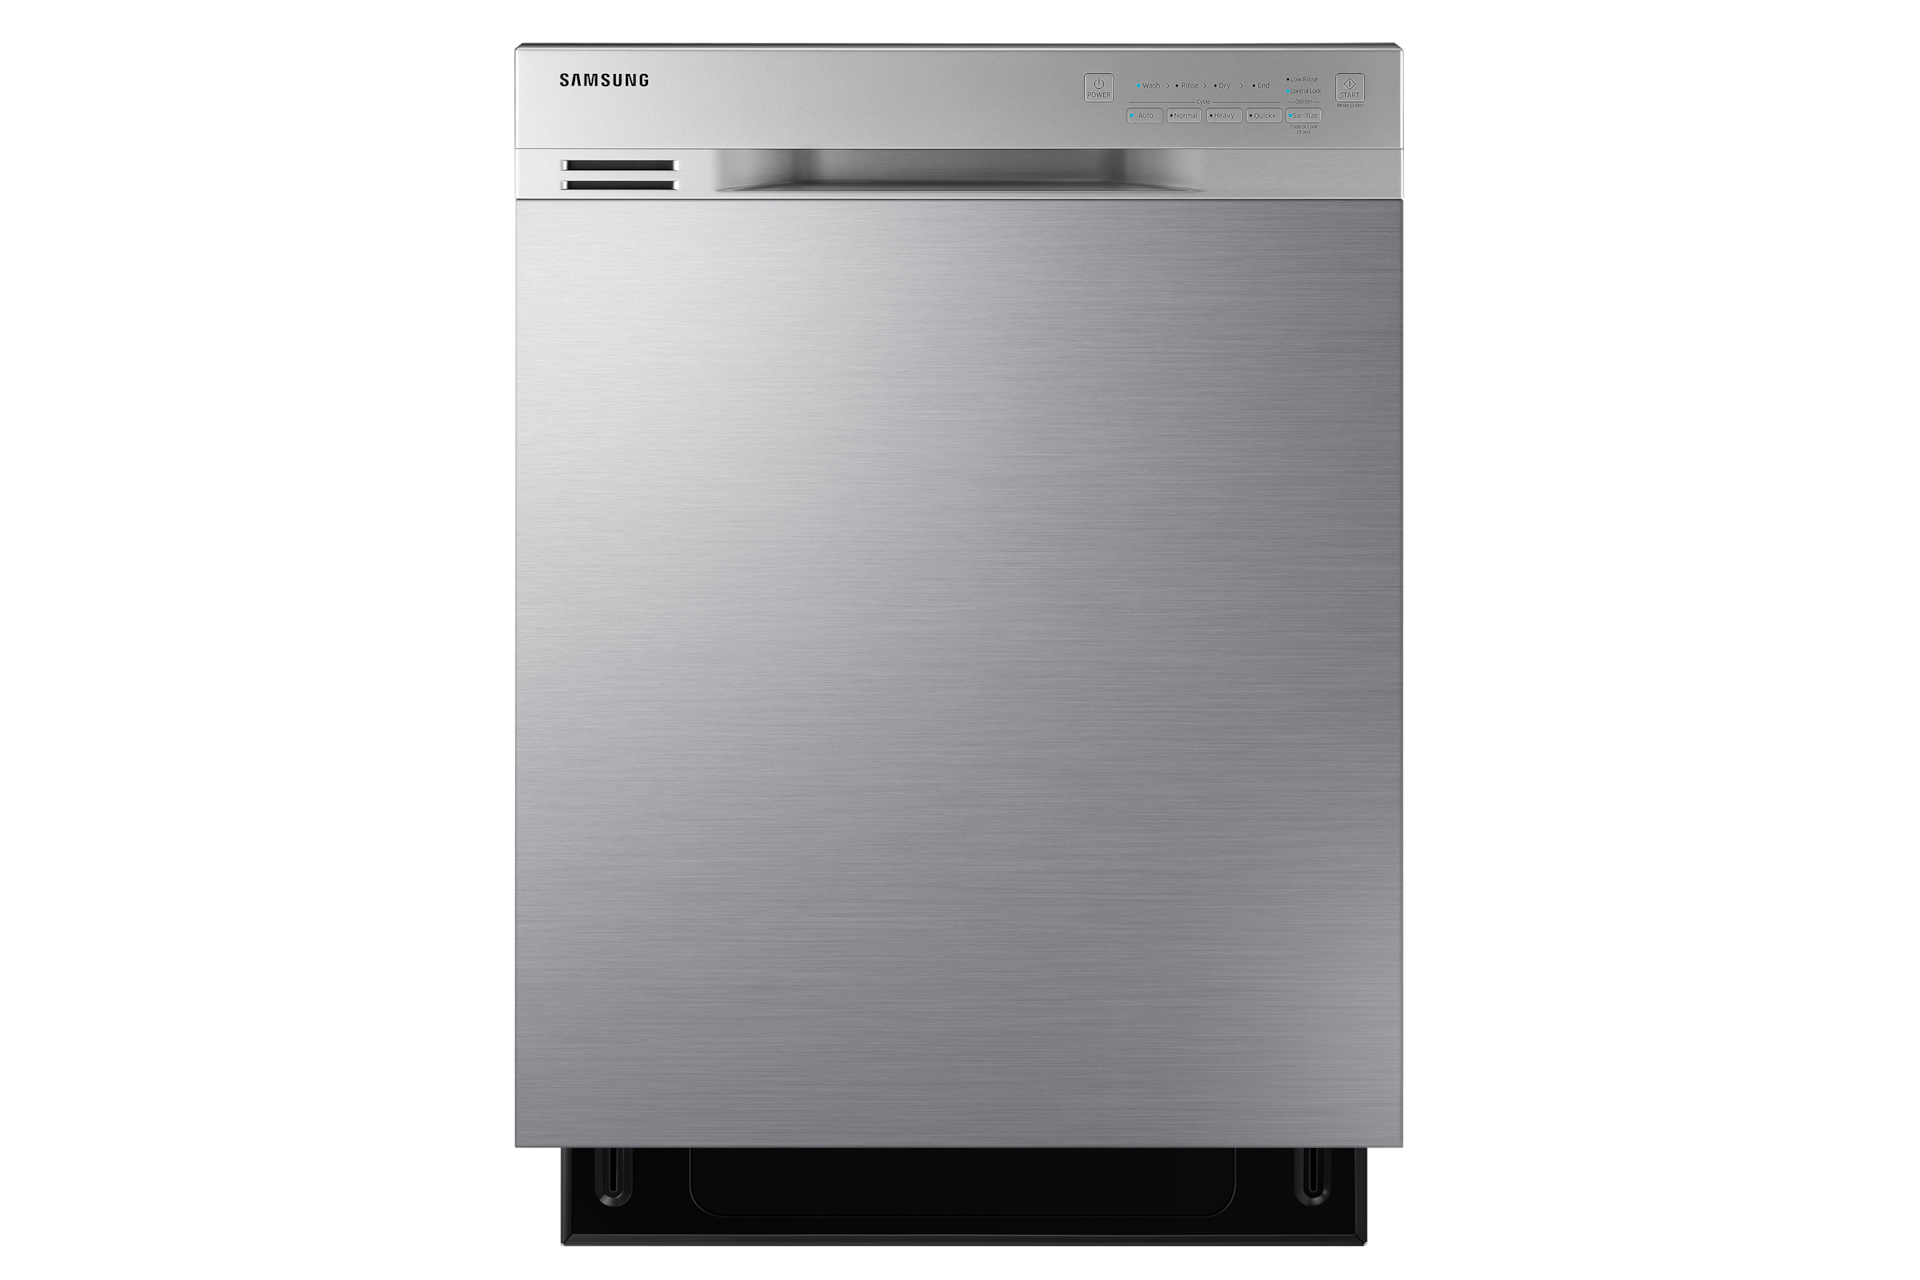 Samsung DW80J3020US Dishwasher with 